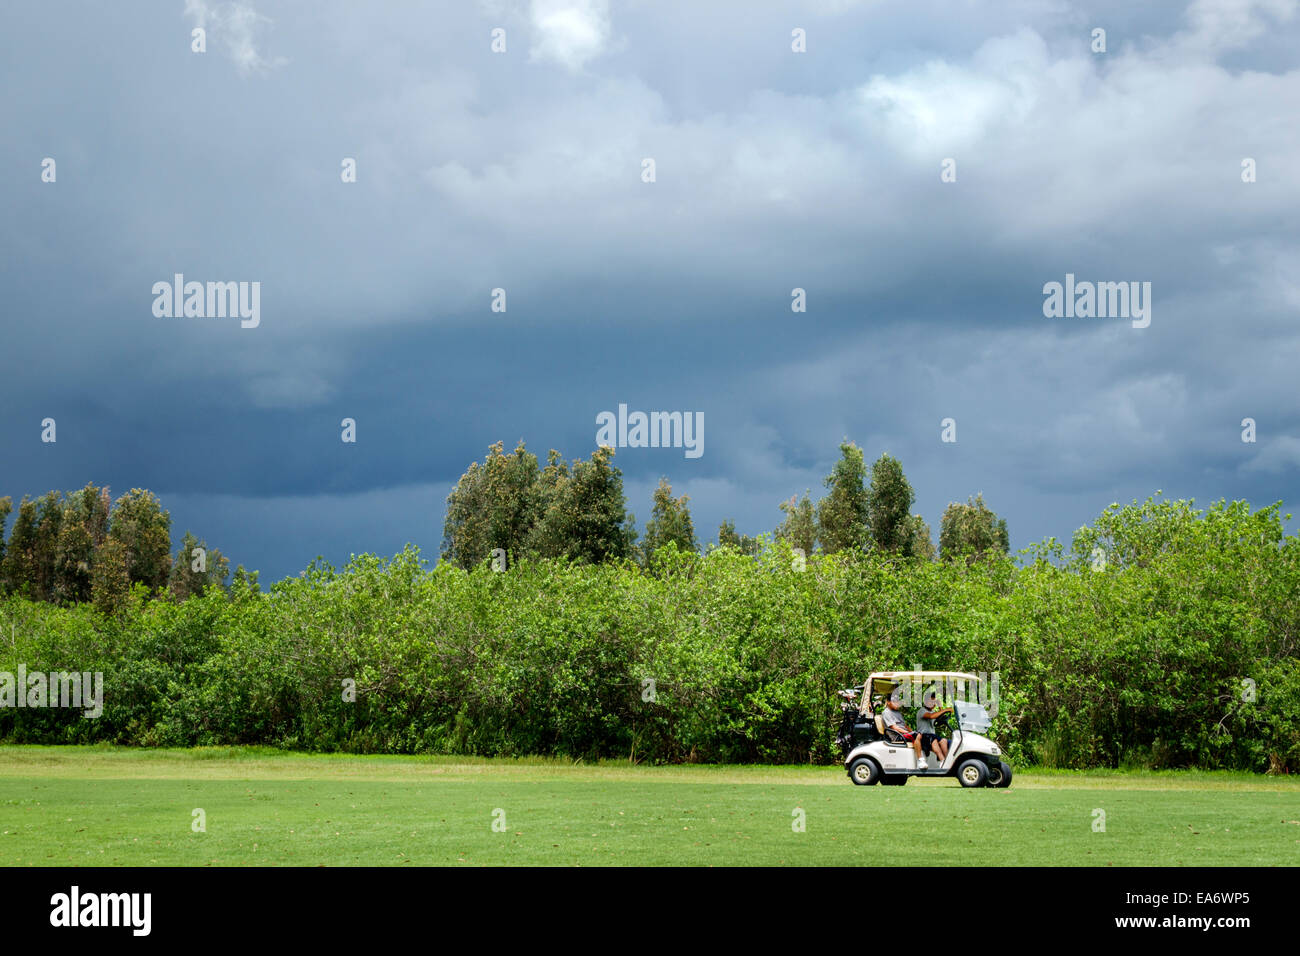 Indiantown Florida, Indianwood Golf & Country Club, herannahender Sturm, bedrohlich, Mann Männer männlich, Golfer, elektrischer Wagen, FL140803096 Stockfoto